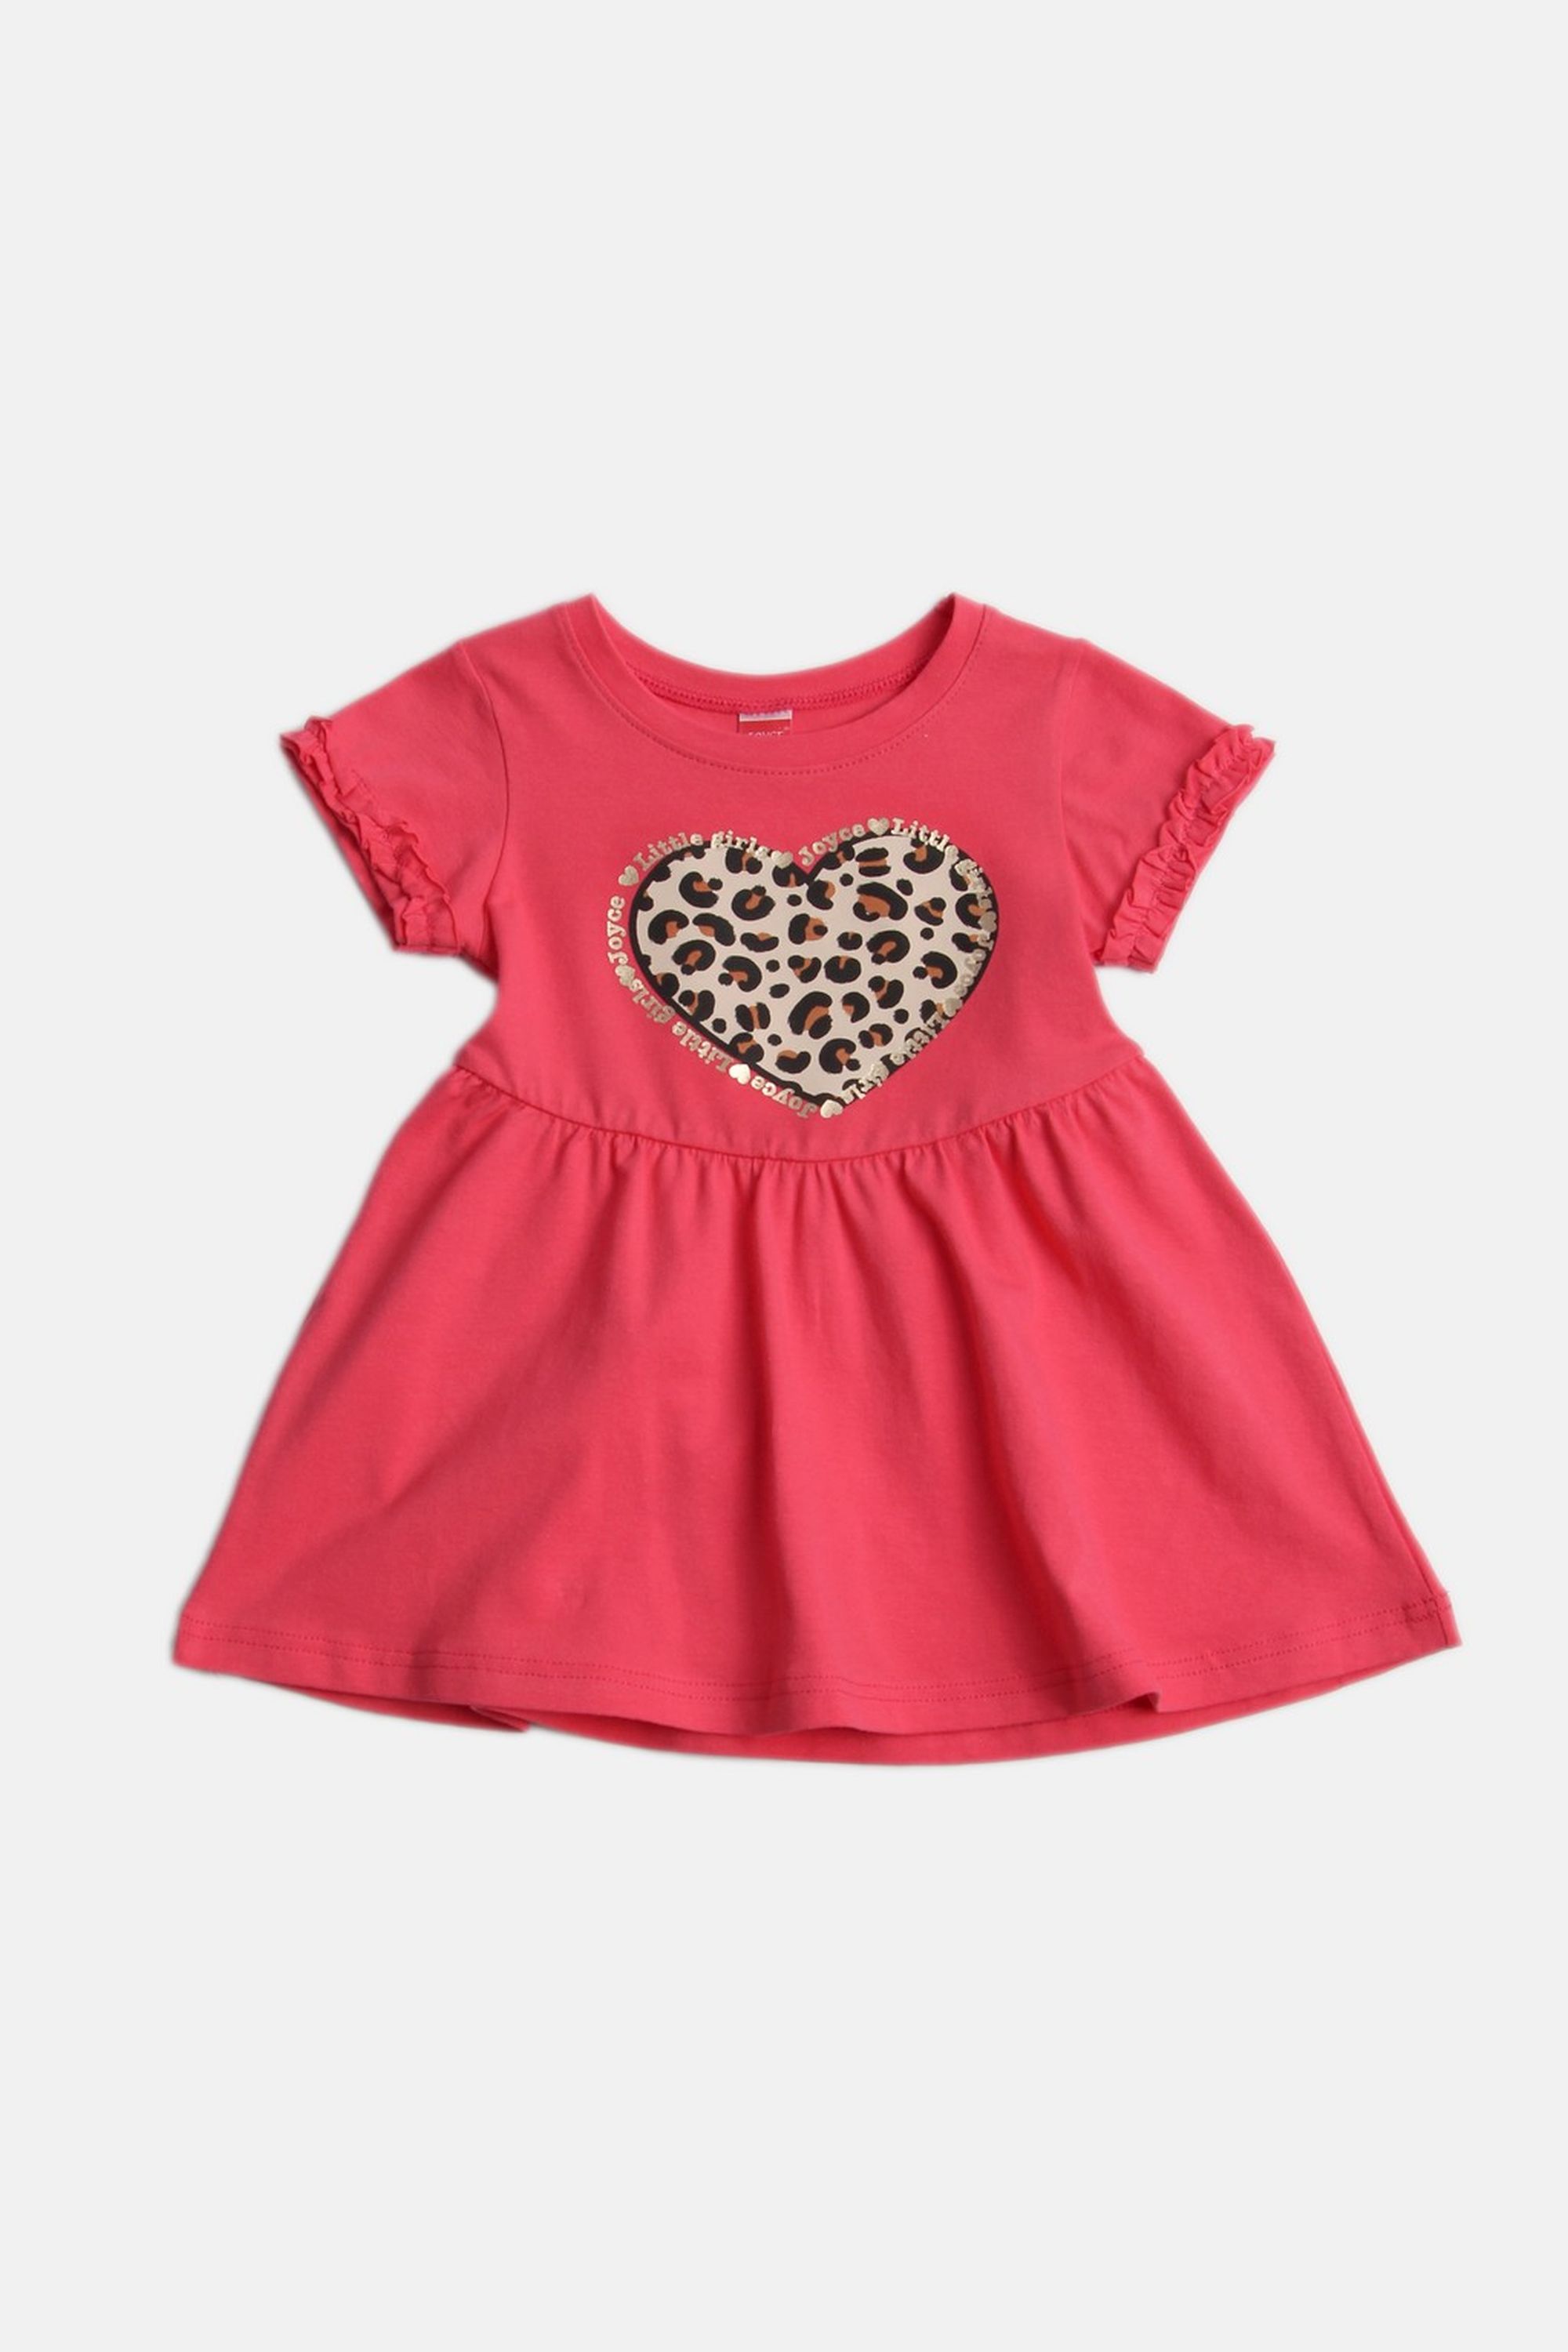 Dívčí bavlněné šaty "ANIMAL HEART"/Malinová, béžová Barva: Červená, Velikost: vel. 4 (100/108 cm)